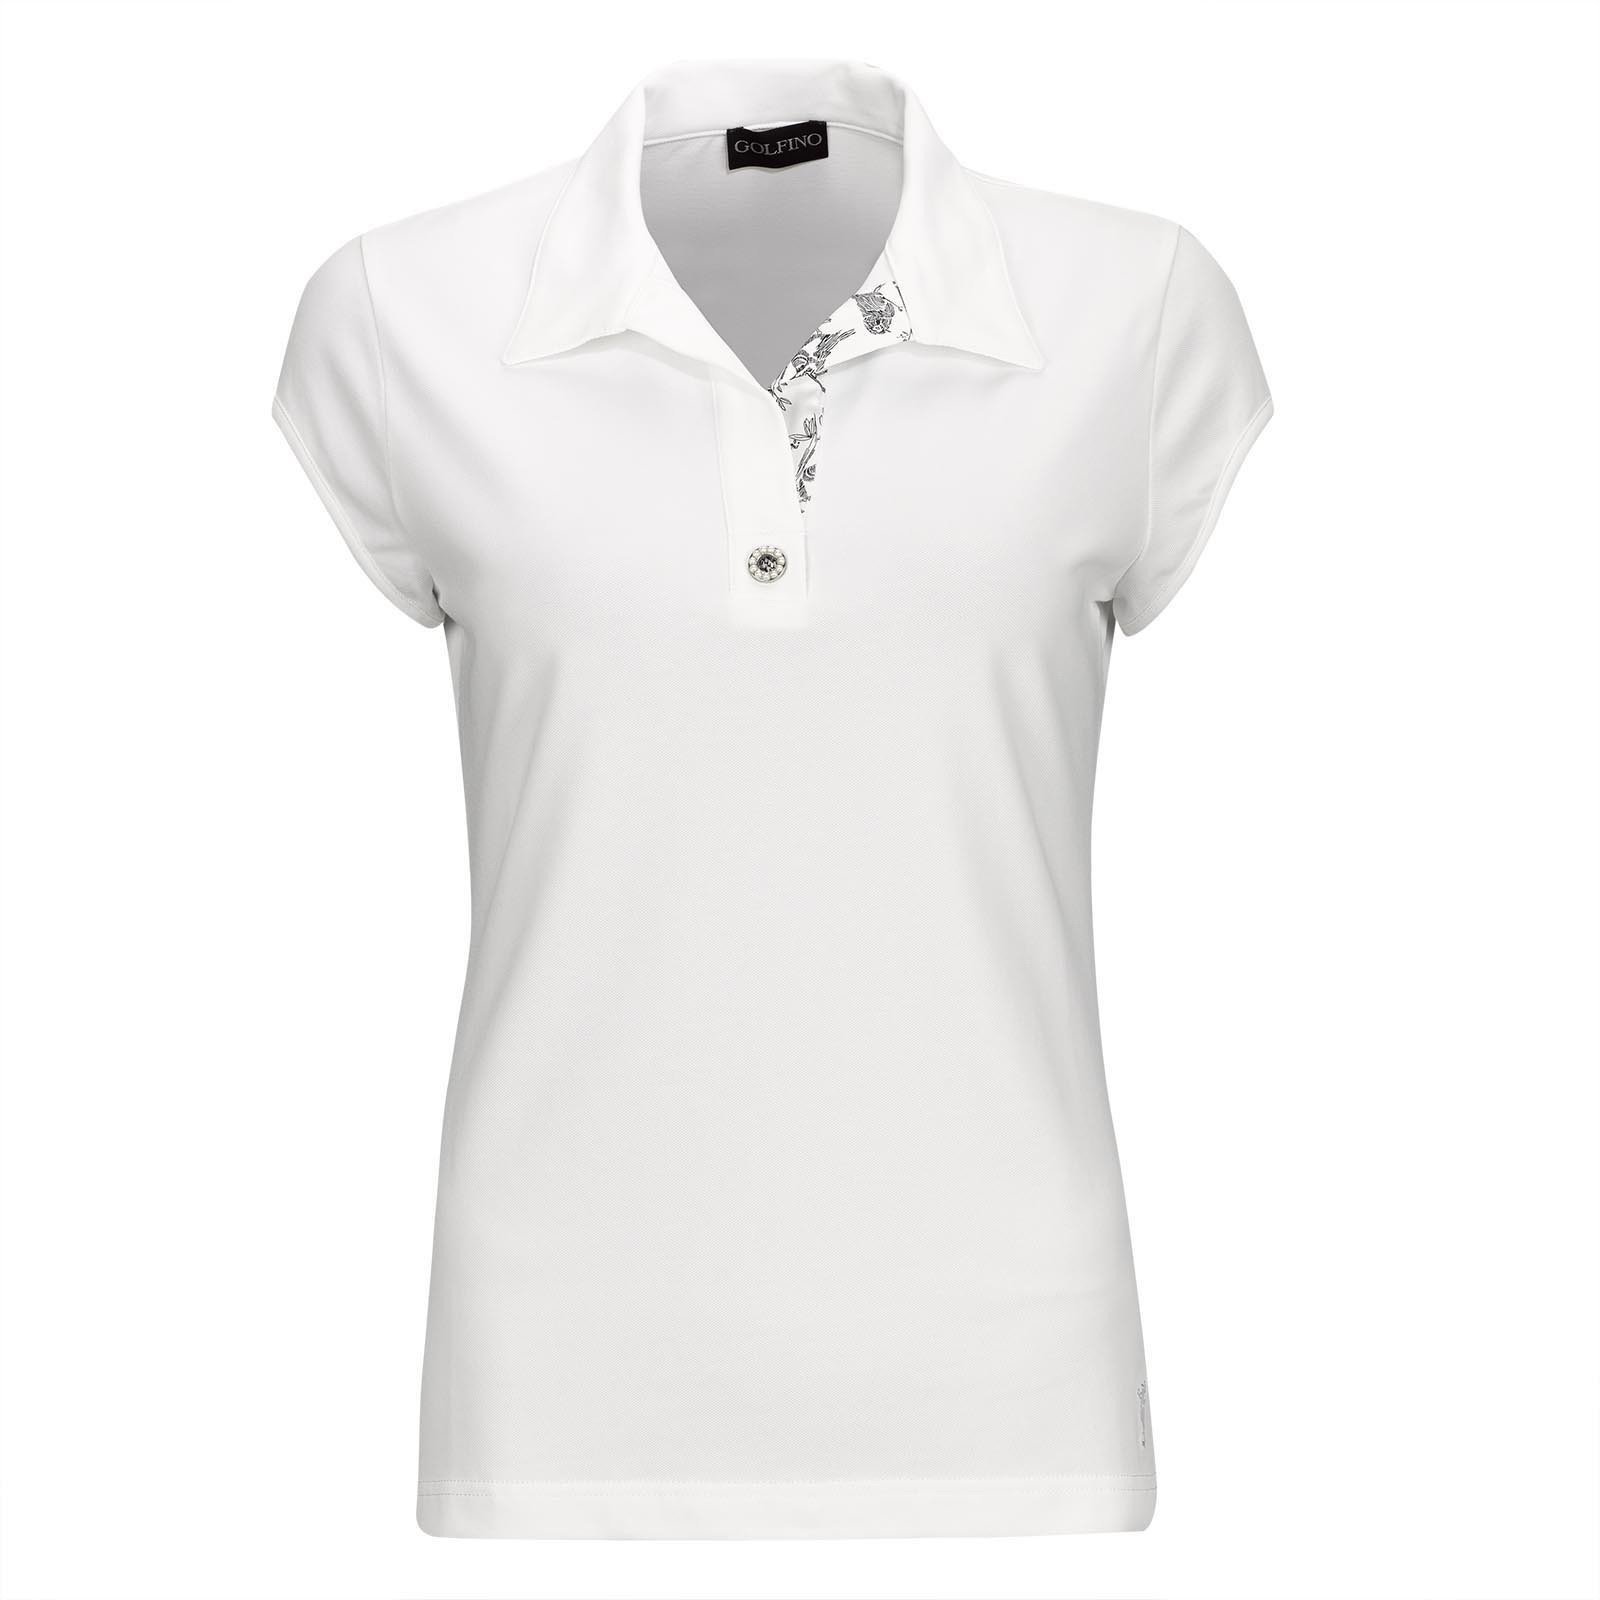 Pikétröja Golfino Pearls Cap Sleeve Womens Polo Shirt White 38